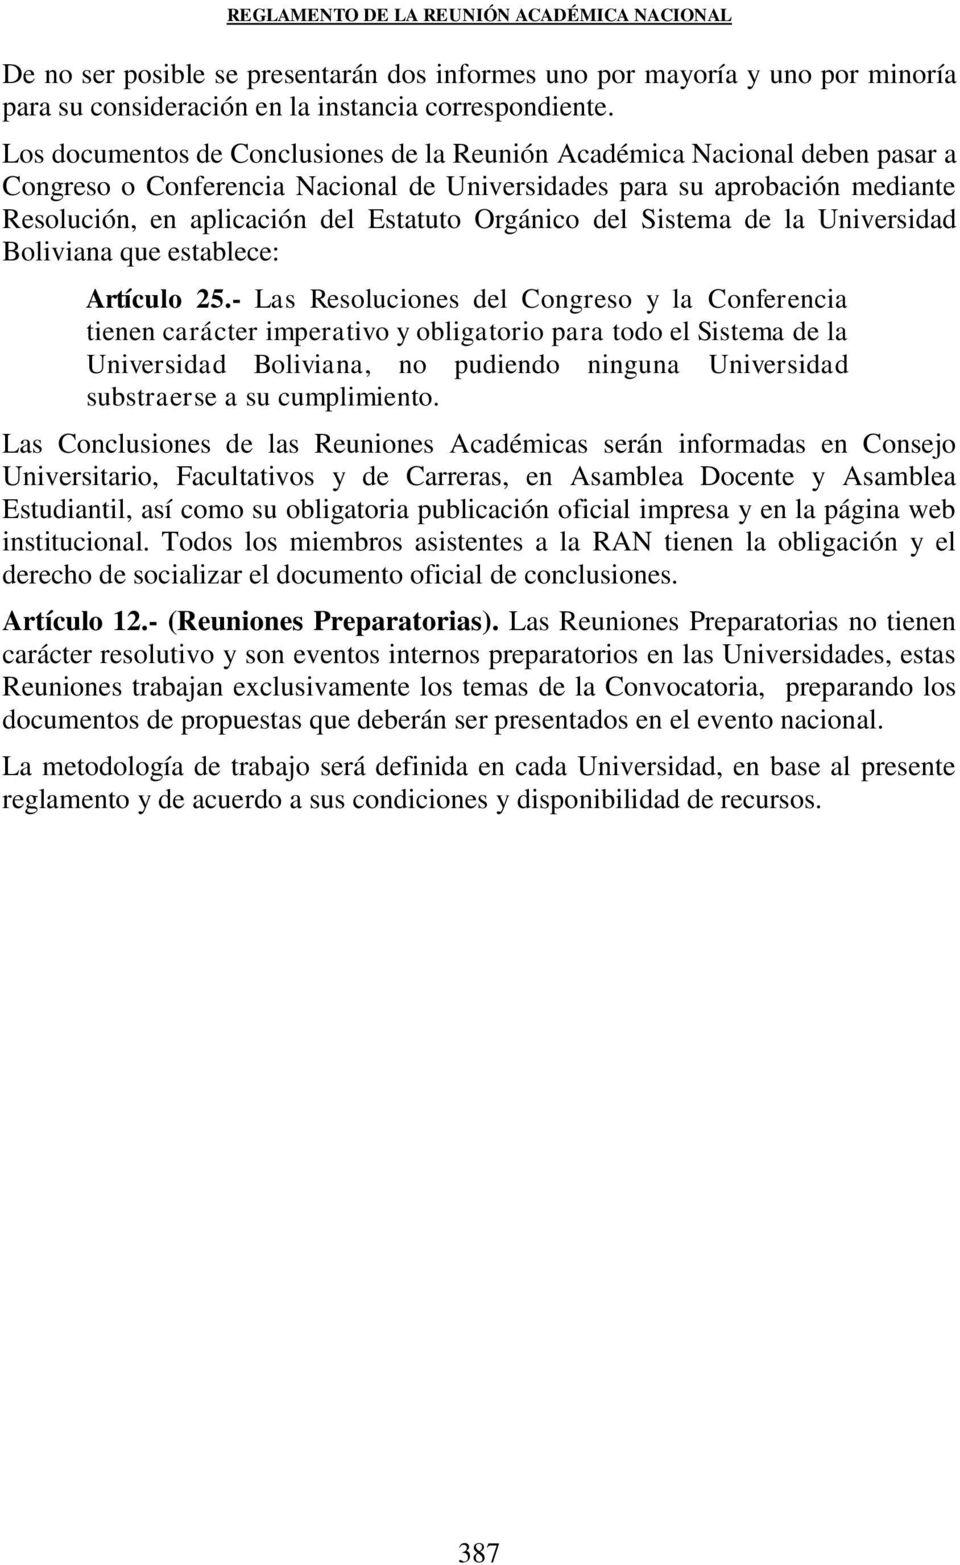 Orgánico del Sistema de la Universidad Boliviana que establece: Artículo 25.